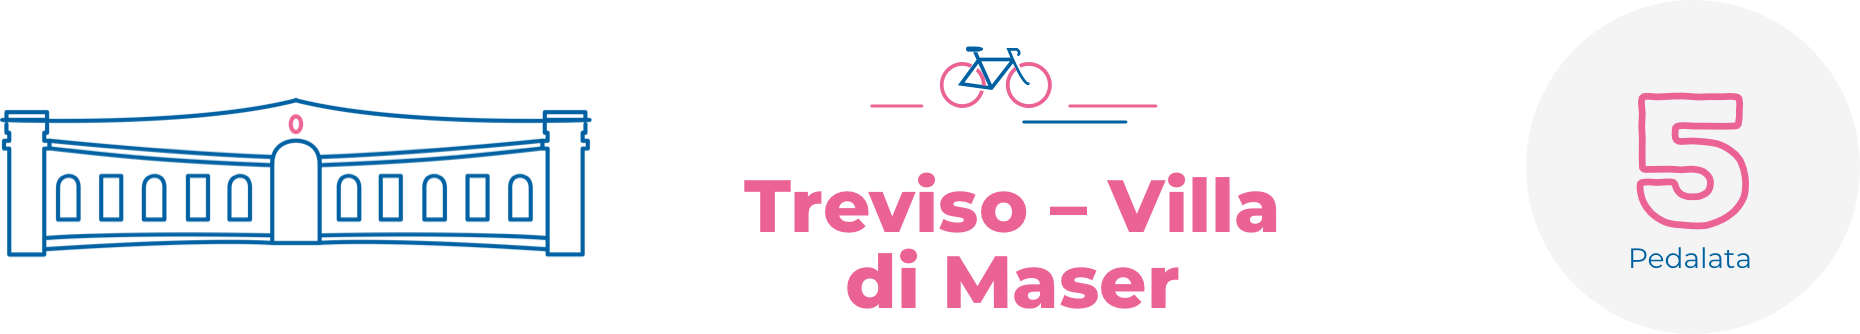 Treviso Villa Maser